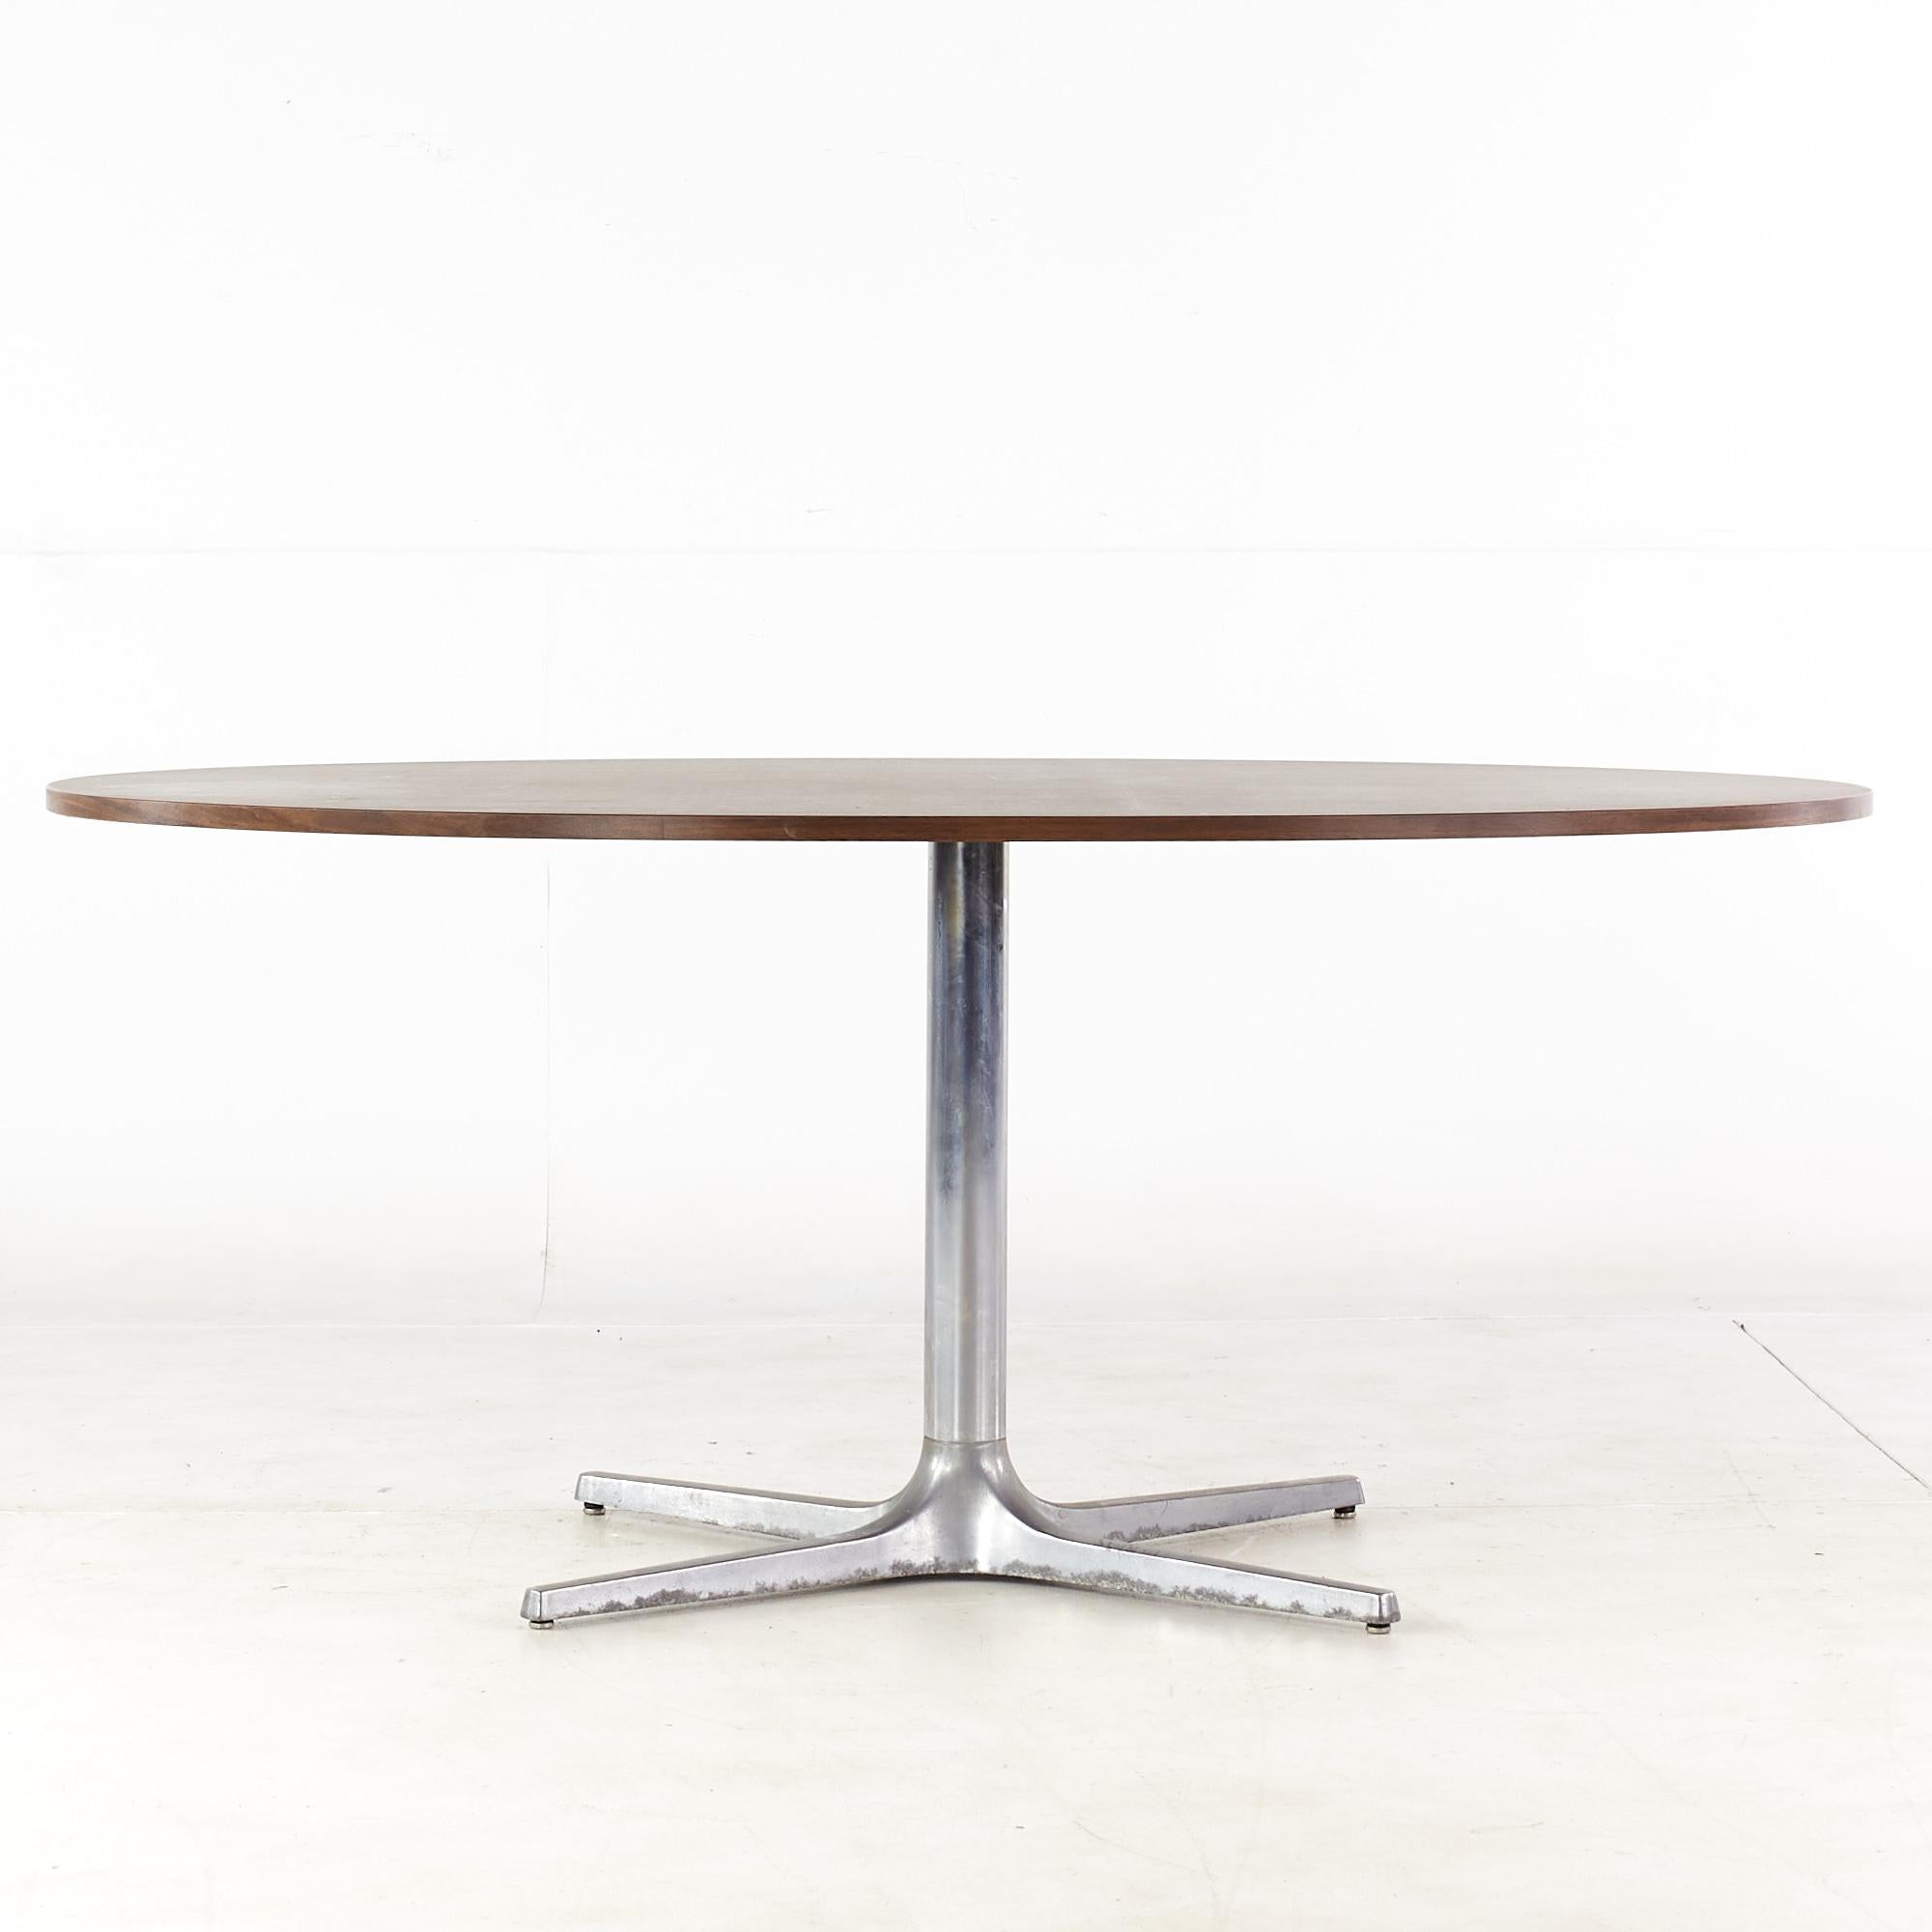 Table de salle à manger Chromcraft mid-century avec plateau stratifié de style knoll.

Cette table mesure : 65.75 de largeur x 44,75 de profondeur x 28,5 de hauteur, avec un dégagement pour les chaises de 27,75 pouces.

Tous les meubles peuvent